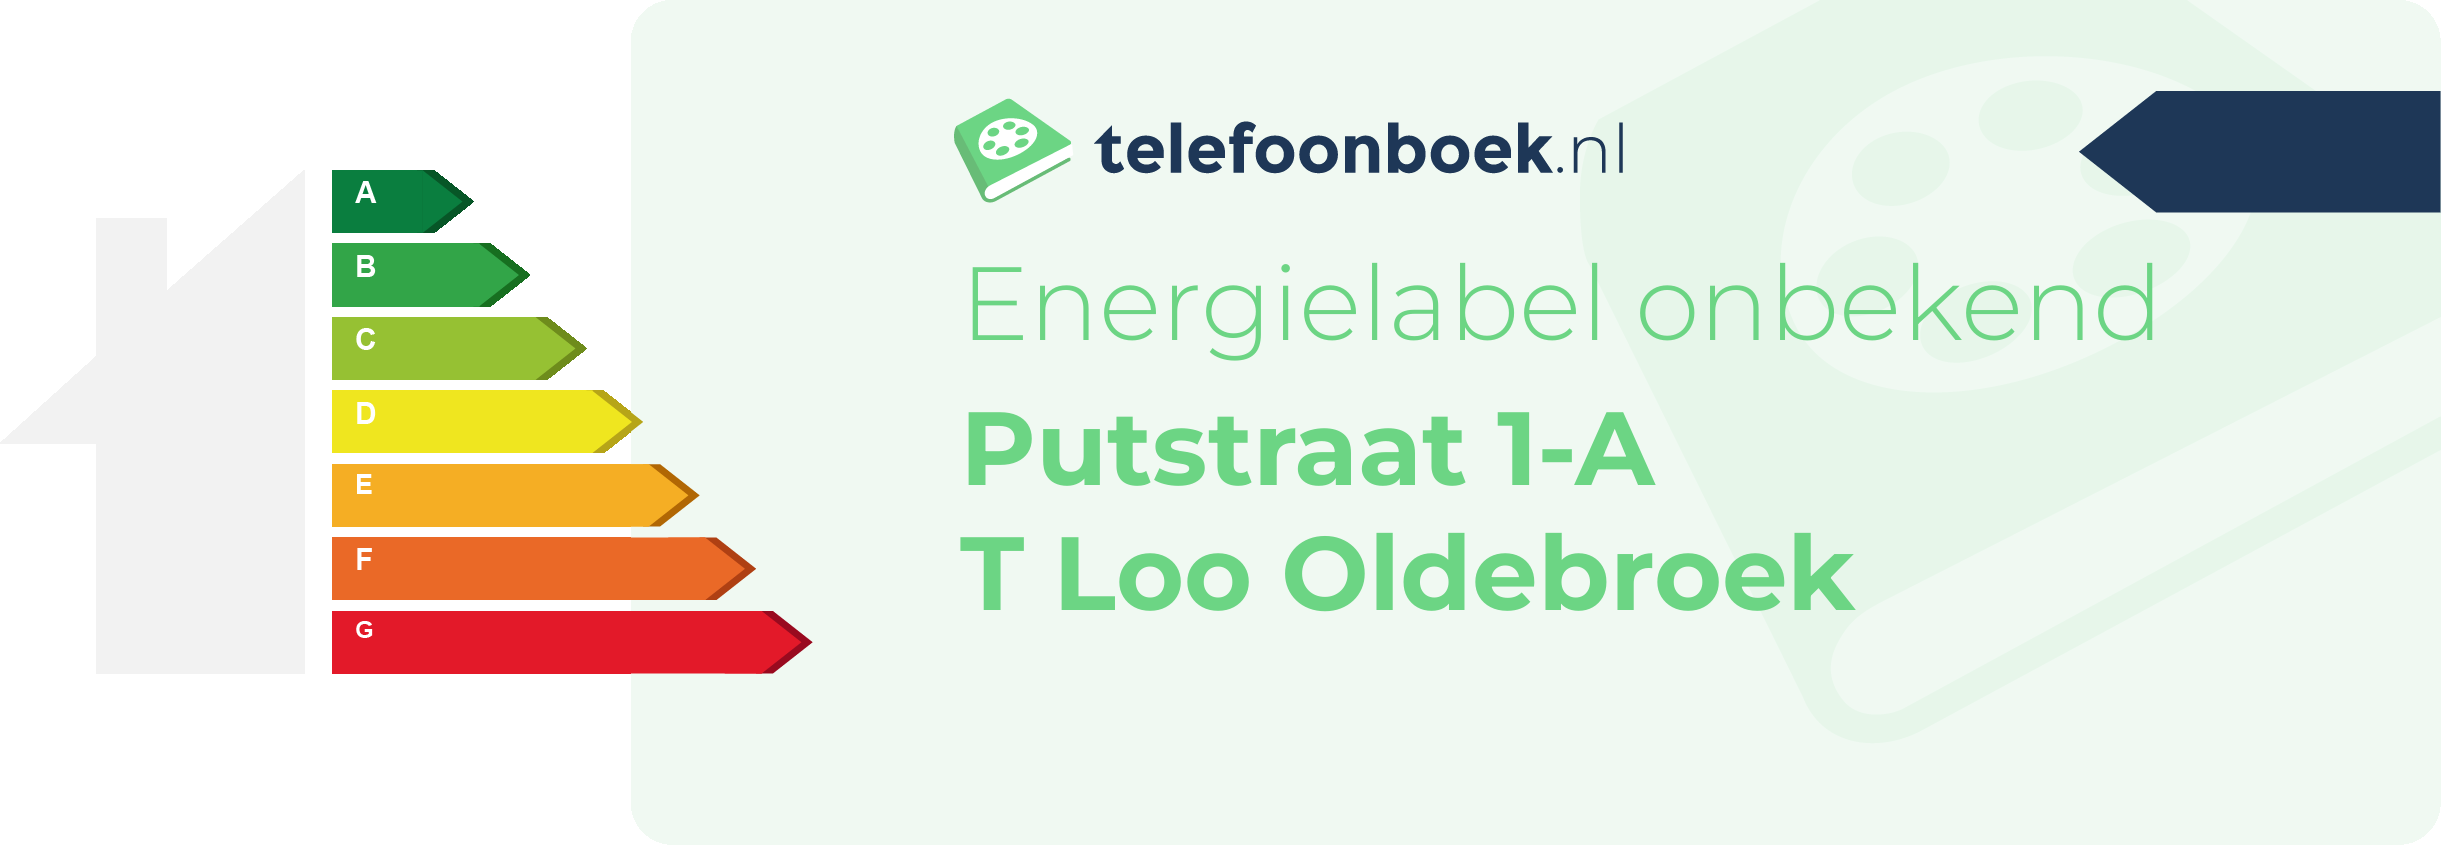 Energielabel Putstraat 1-A T Loo Oldebroek